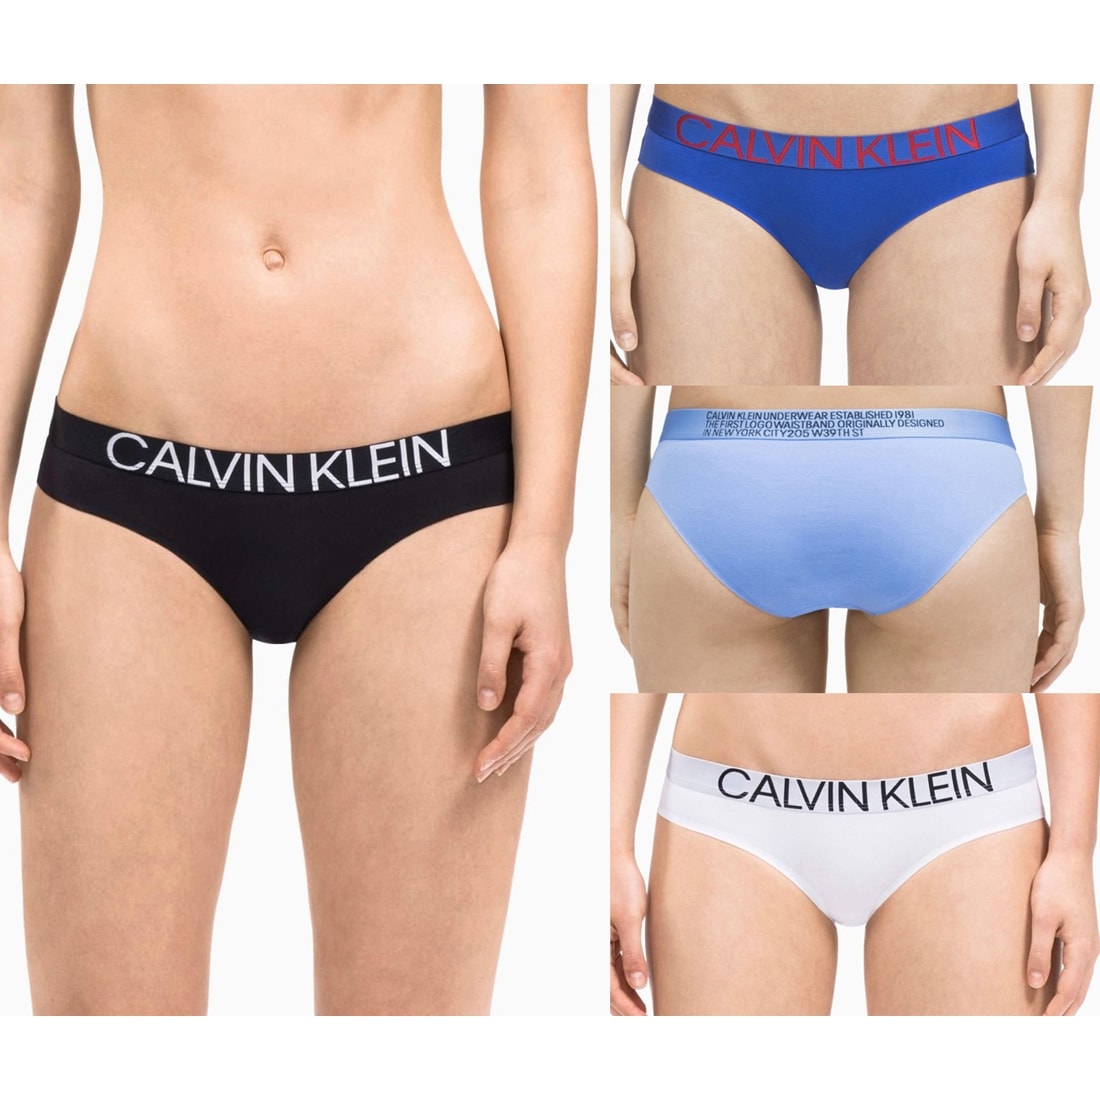 calvin klein underwear new